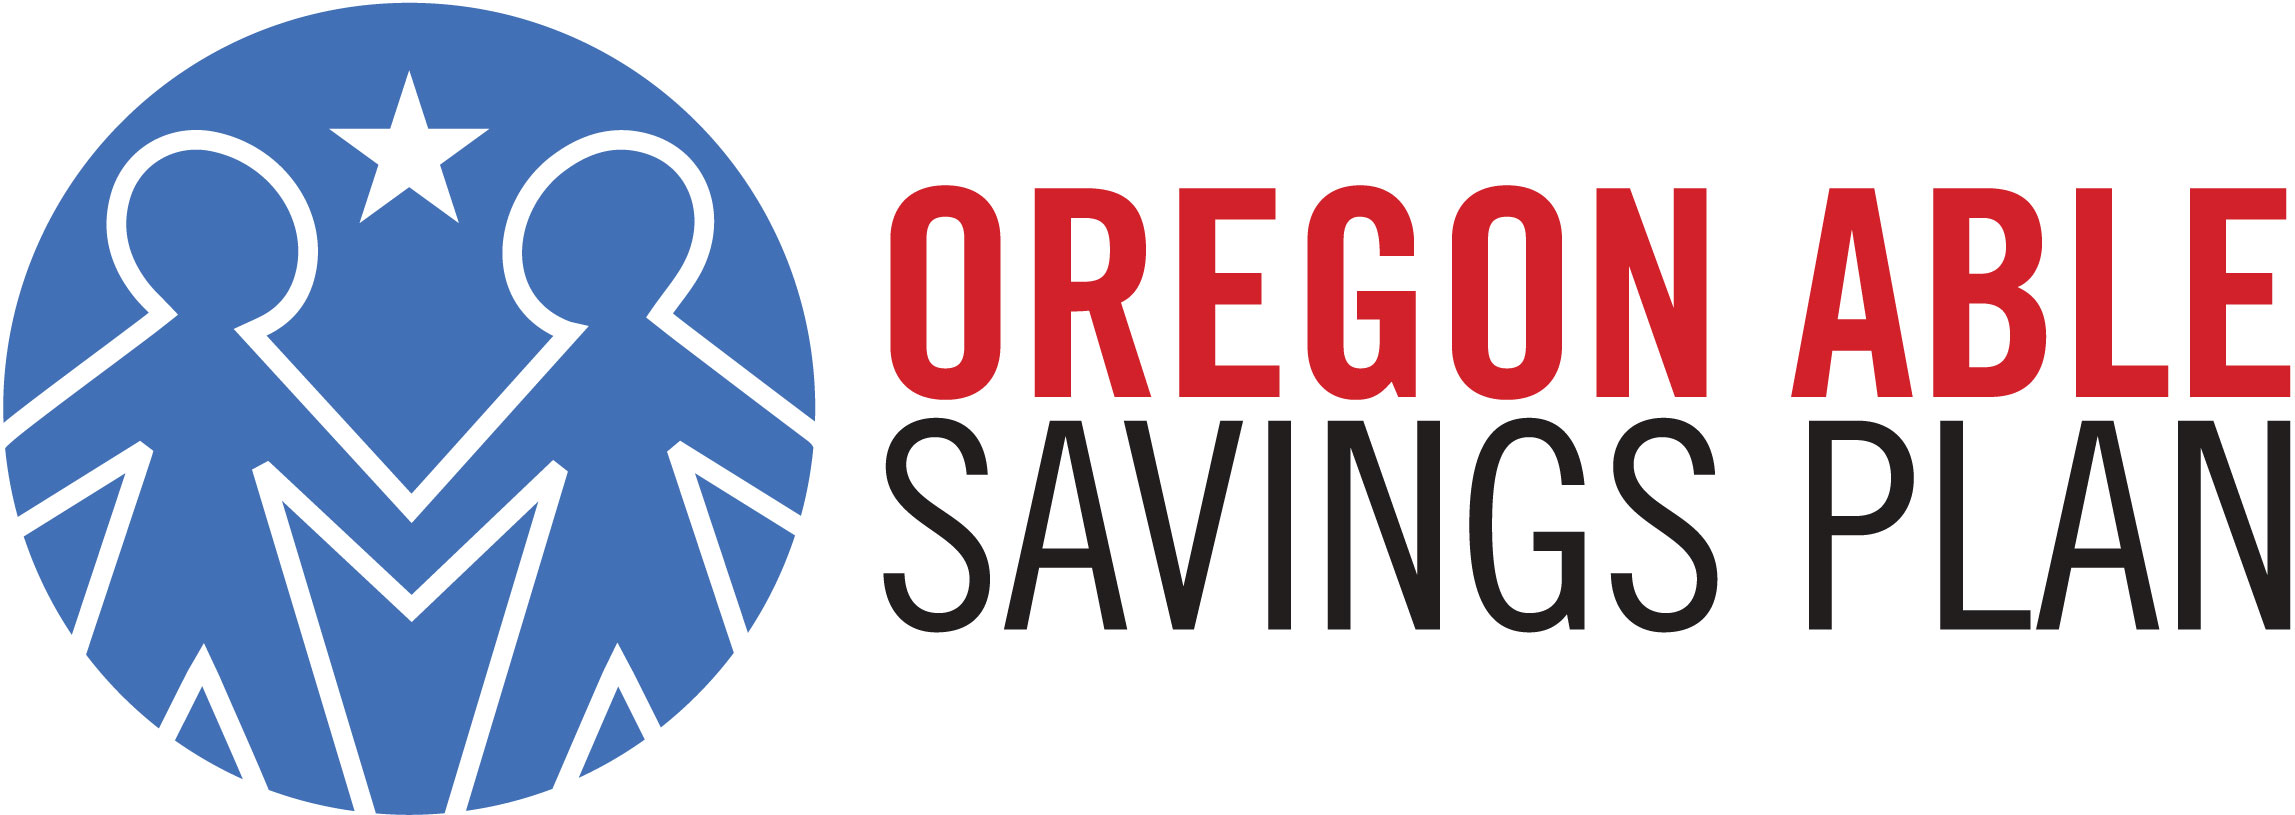 Oregon ABLE Savings Plan